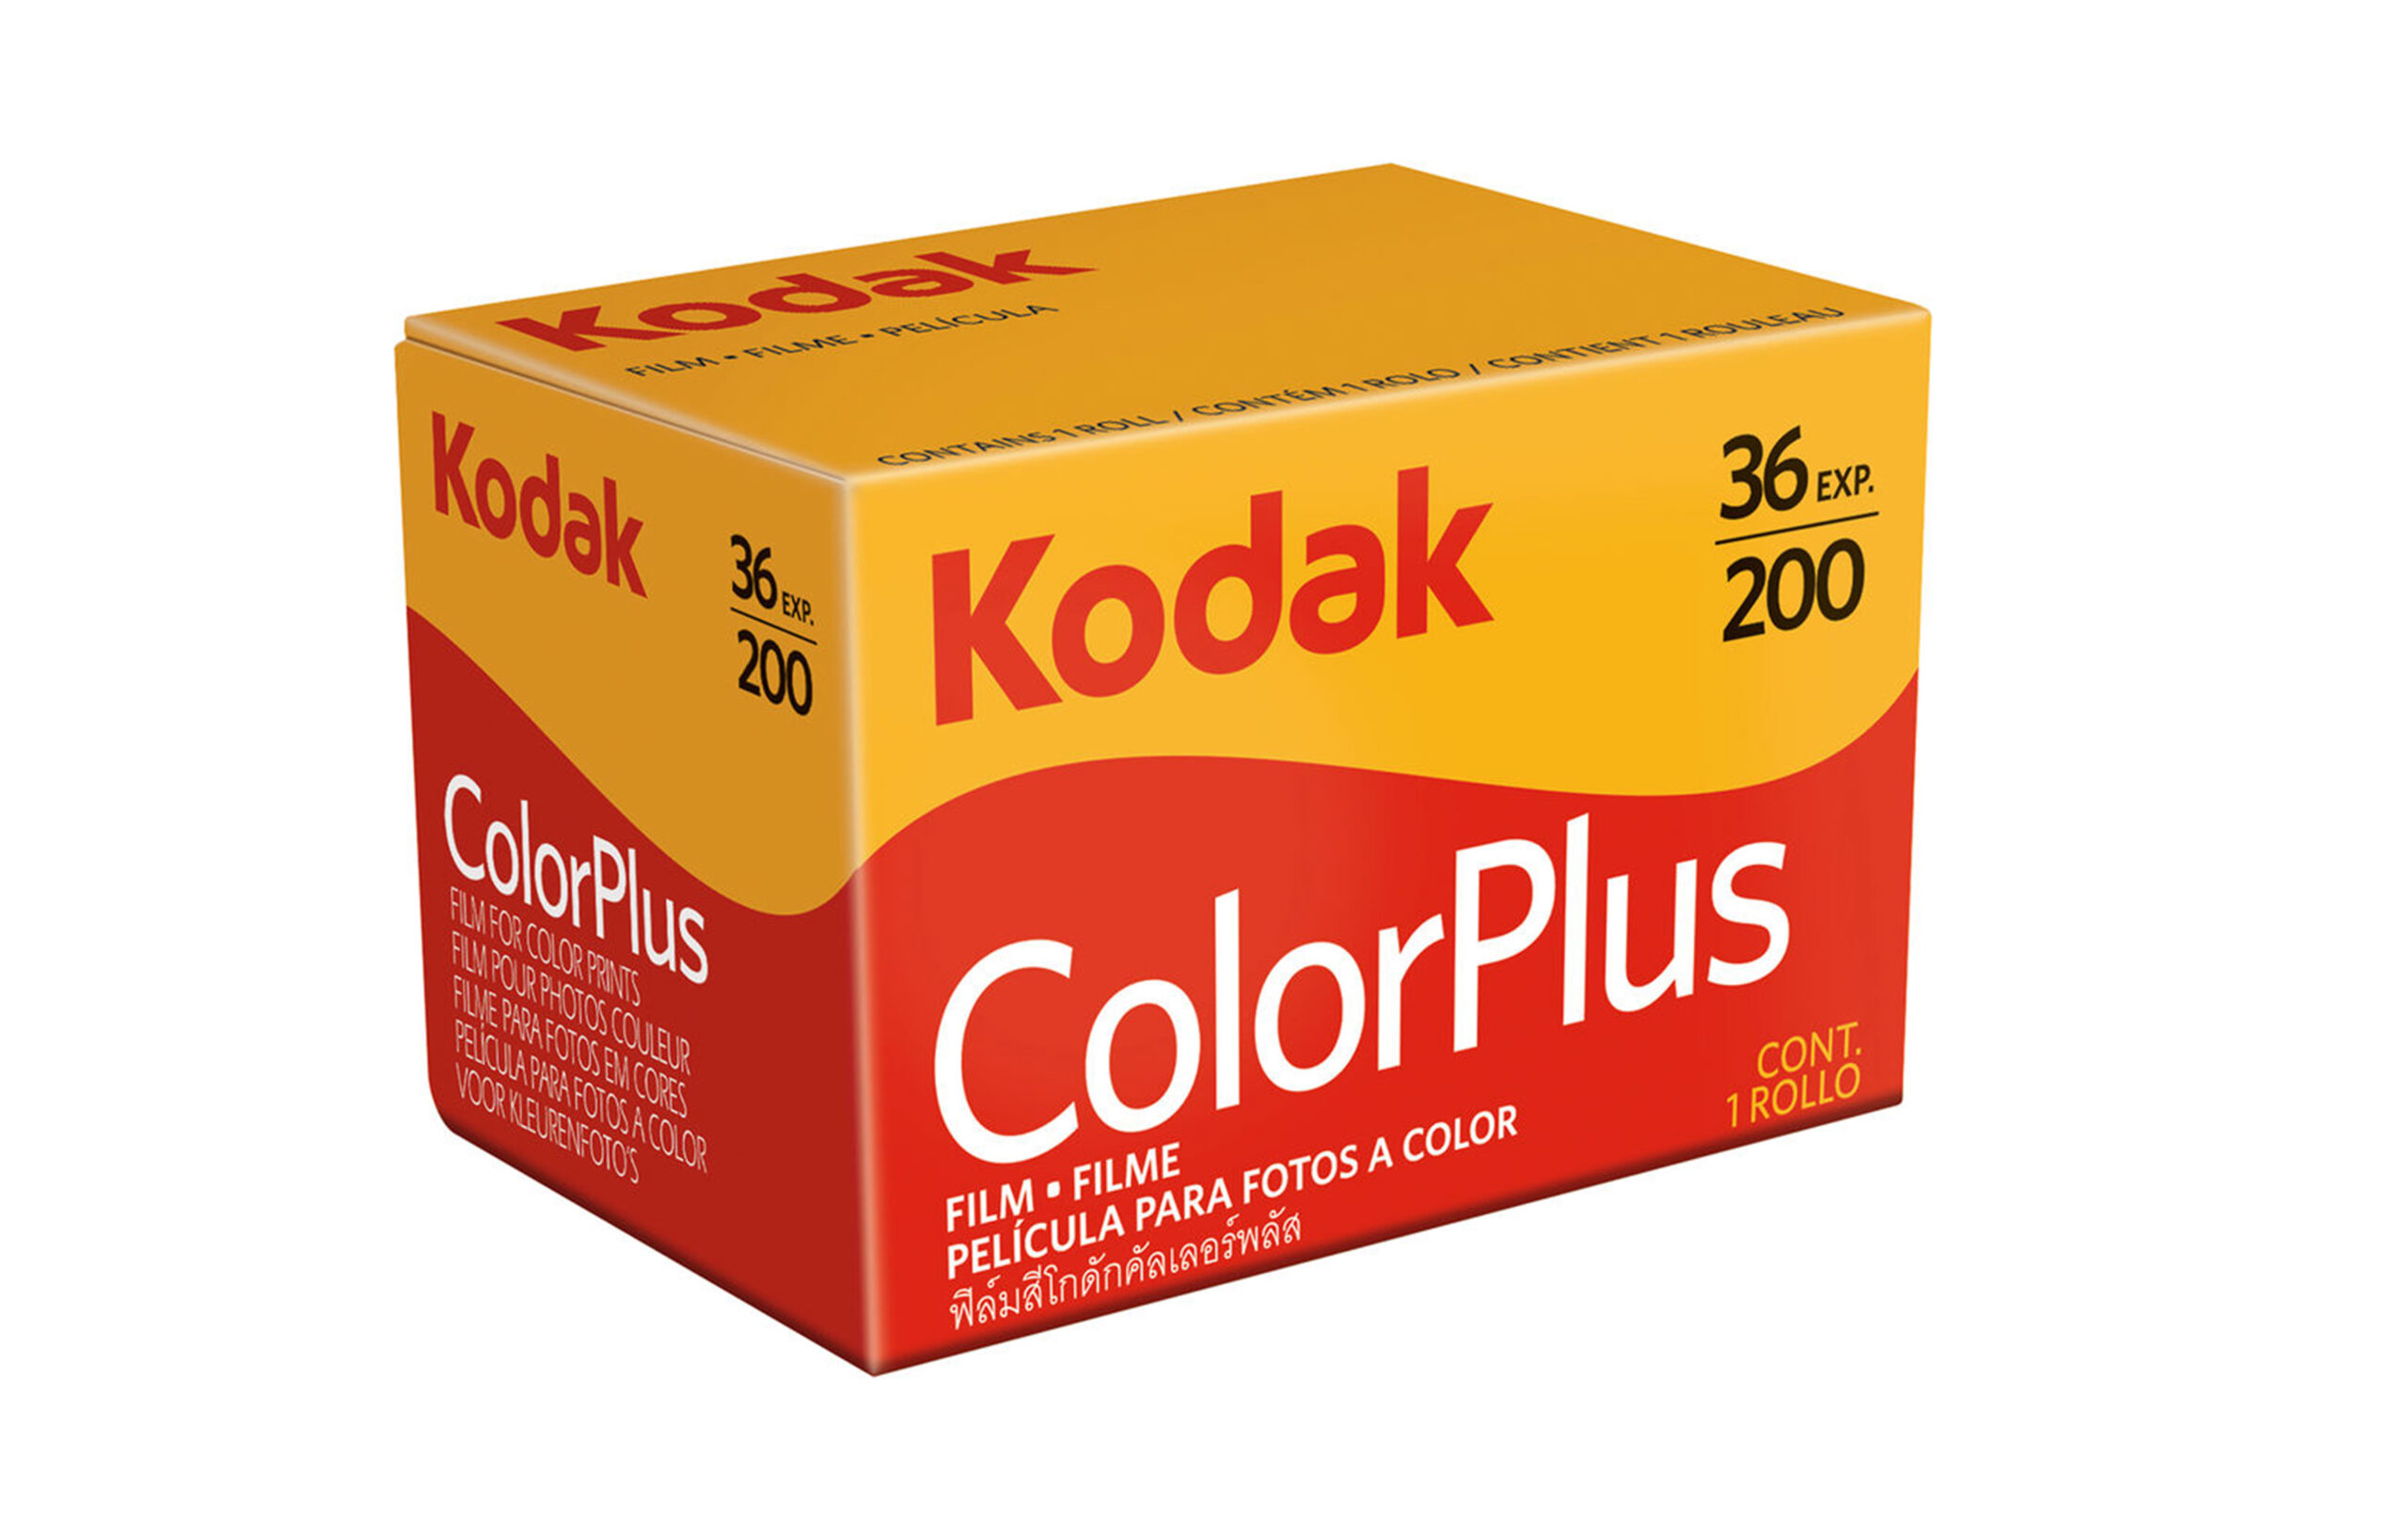 一卷柯达ColorPlus 200胶卷。